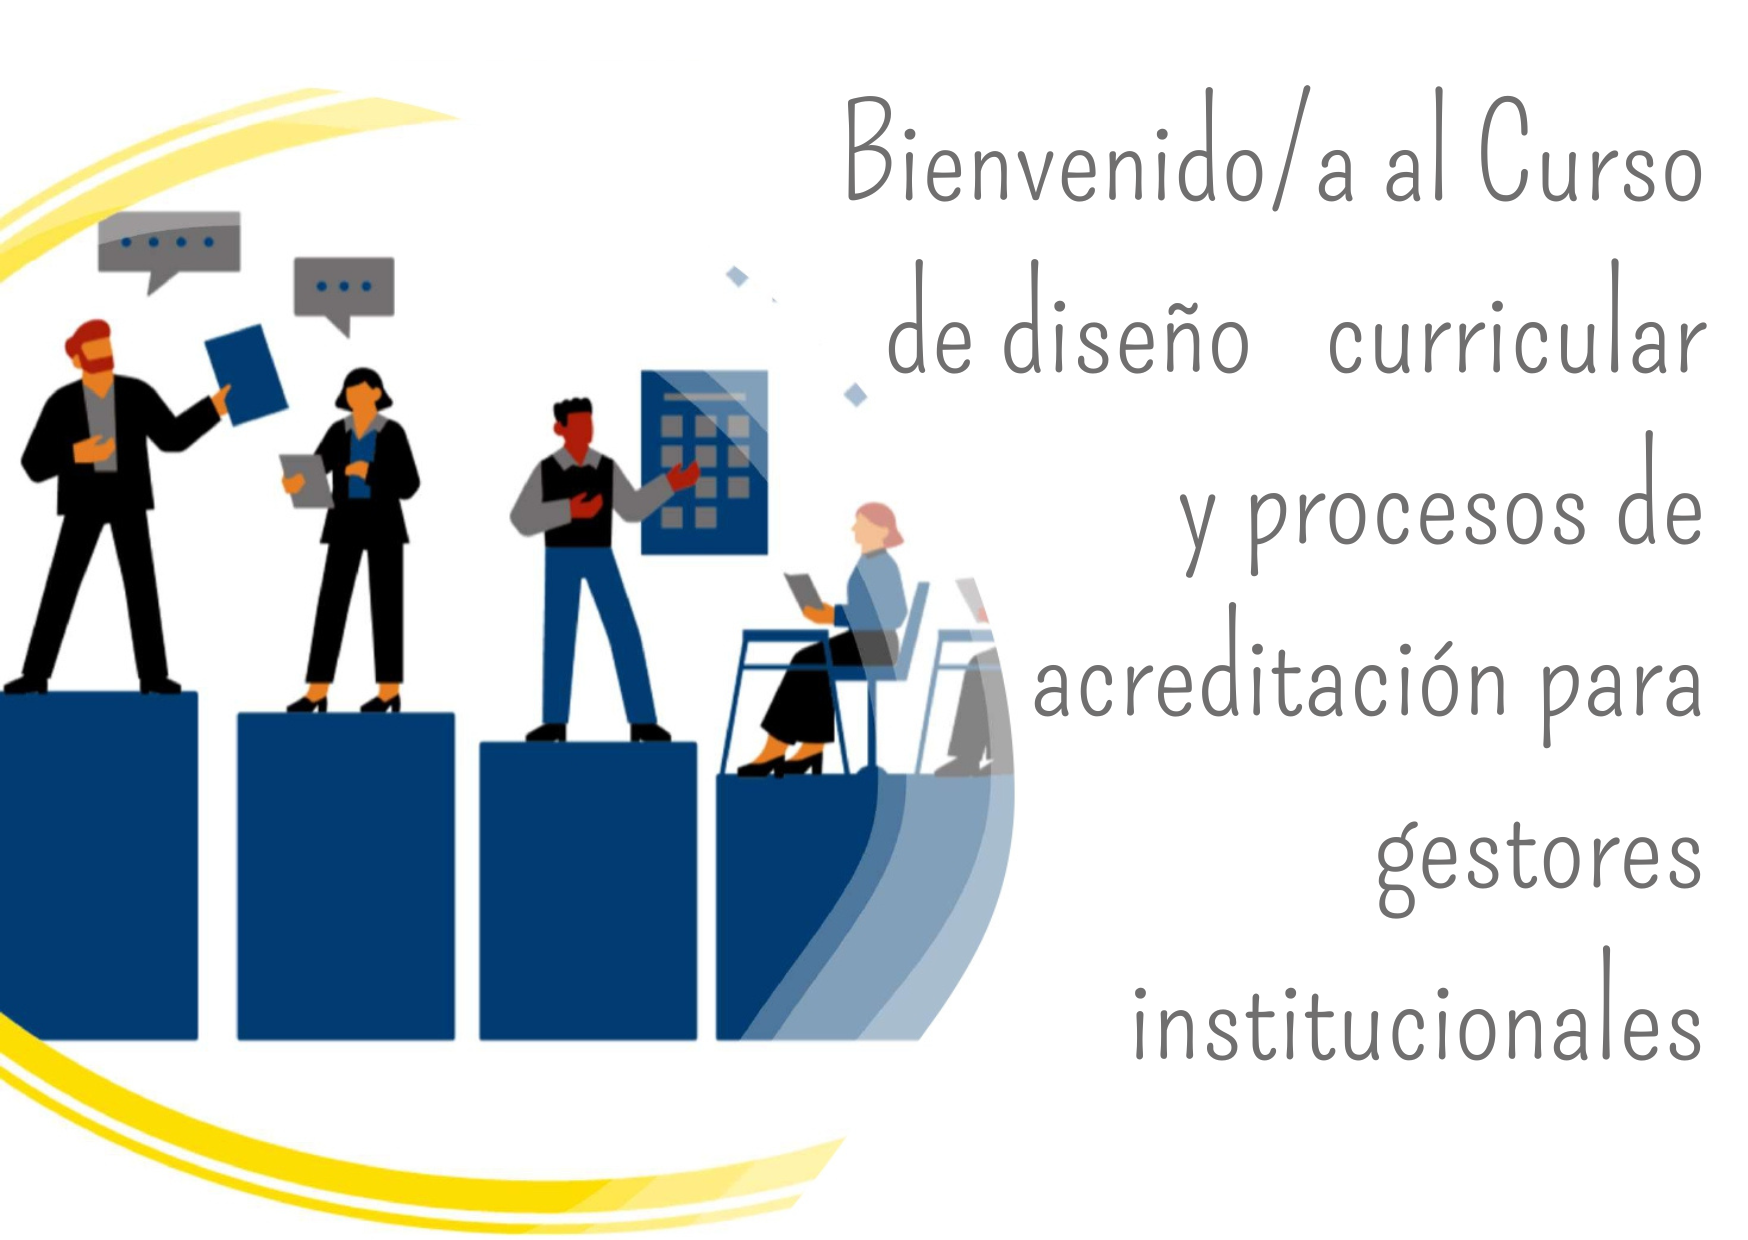 Curso de diseño curricular y procesos de acreditación para gestores institucionales